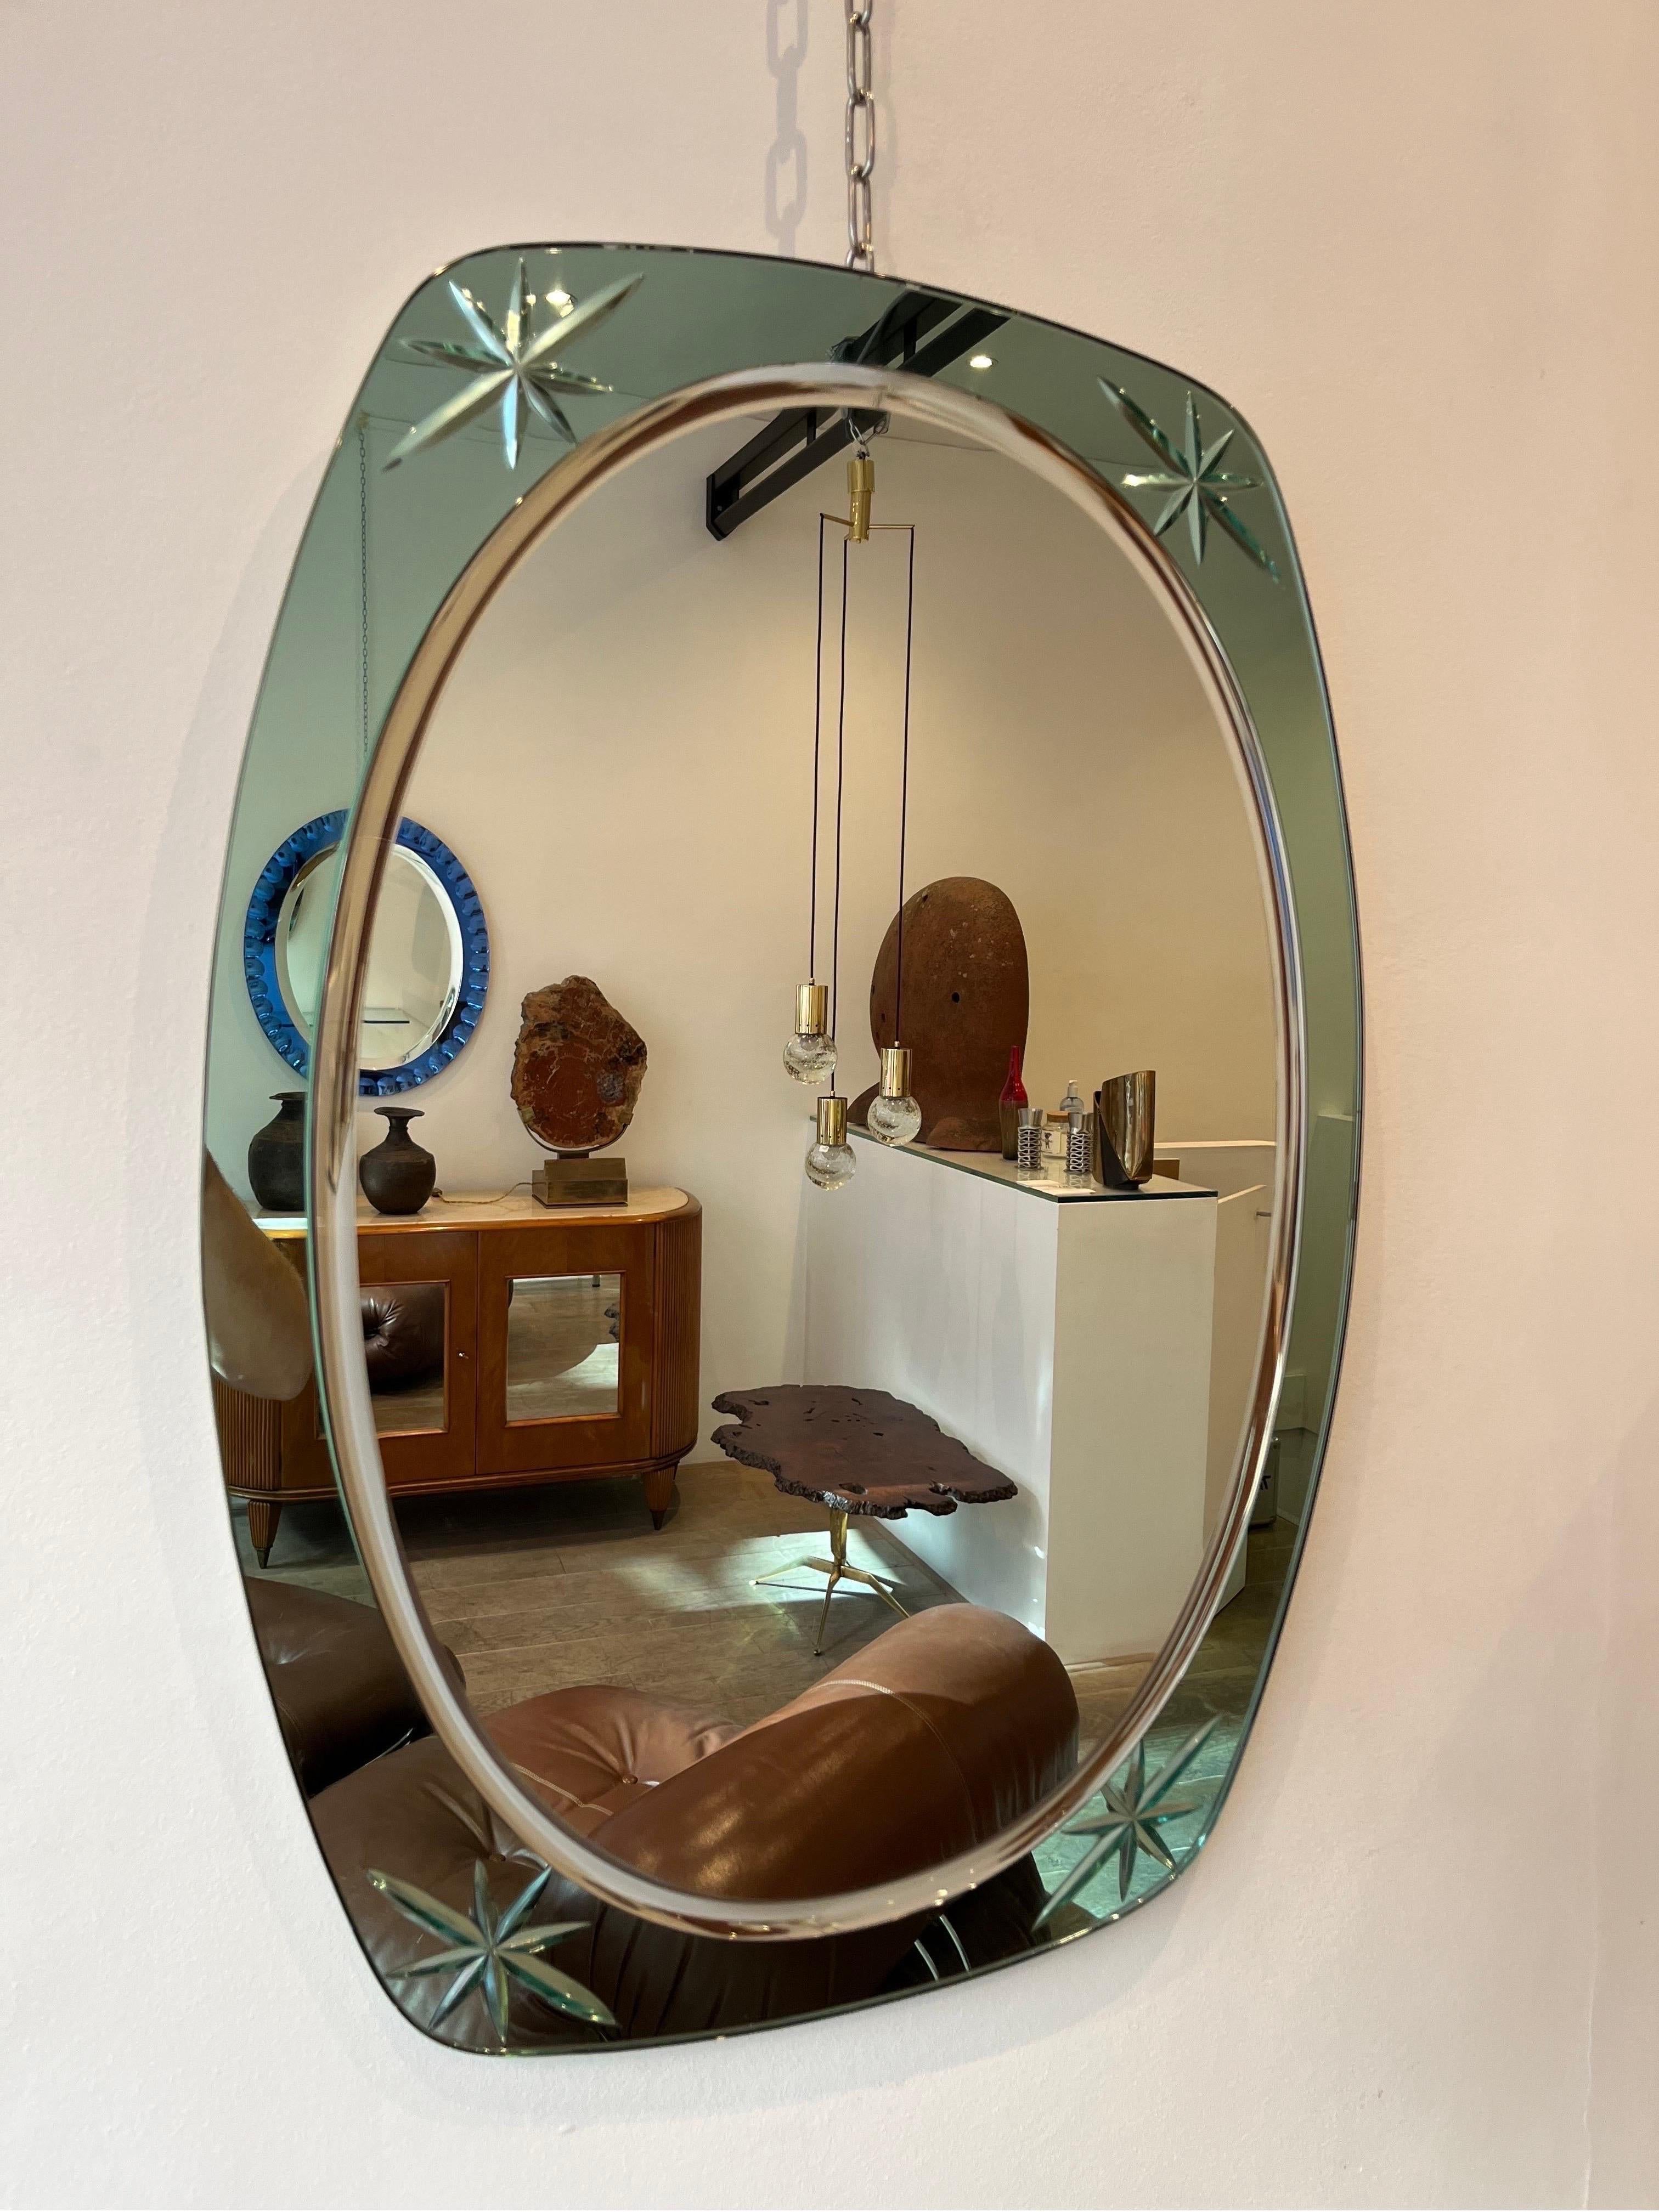 Cristal Arte ist ein bekannter und etablierter Hersteller von dekorativem Glas aus Turin in Italien. Seine Berühmtheit erlangte es in den 1950er Jahren, als die Produktion von dekorativen Spiegeln mit innovativen Designs sehr kreativ war. Der